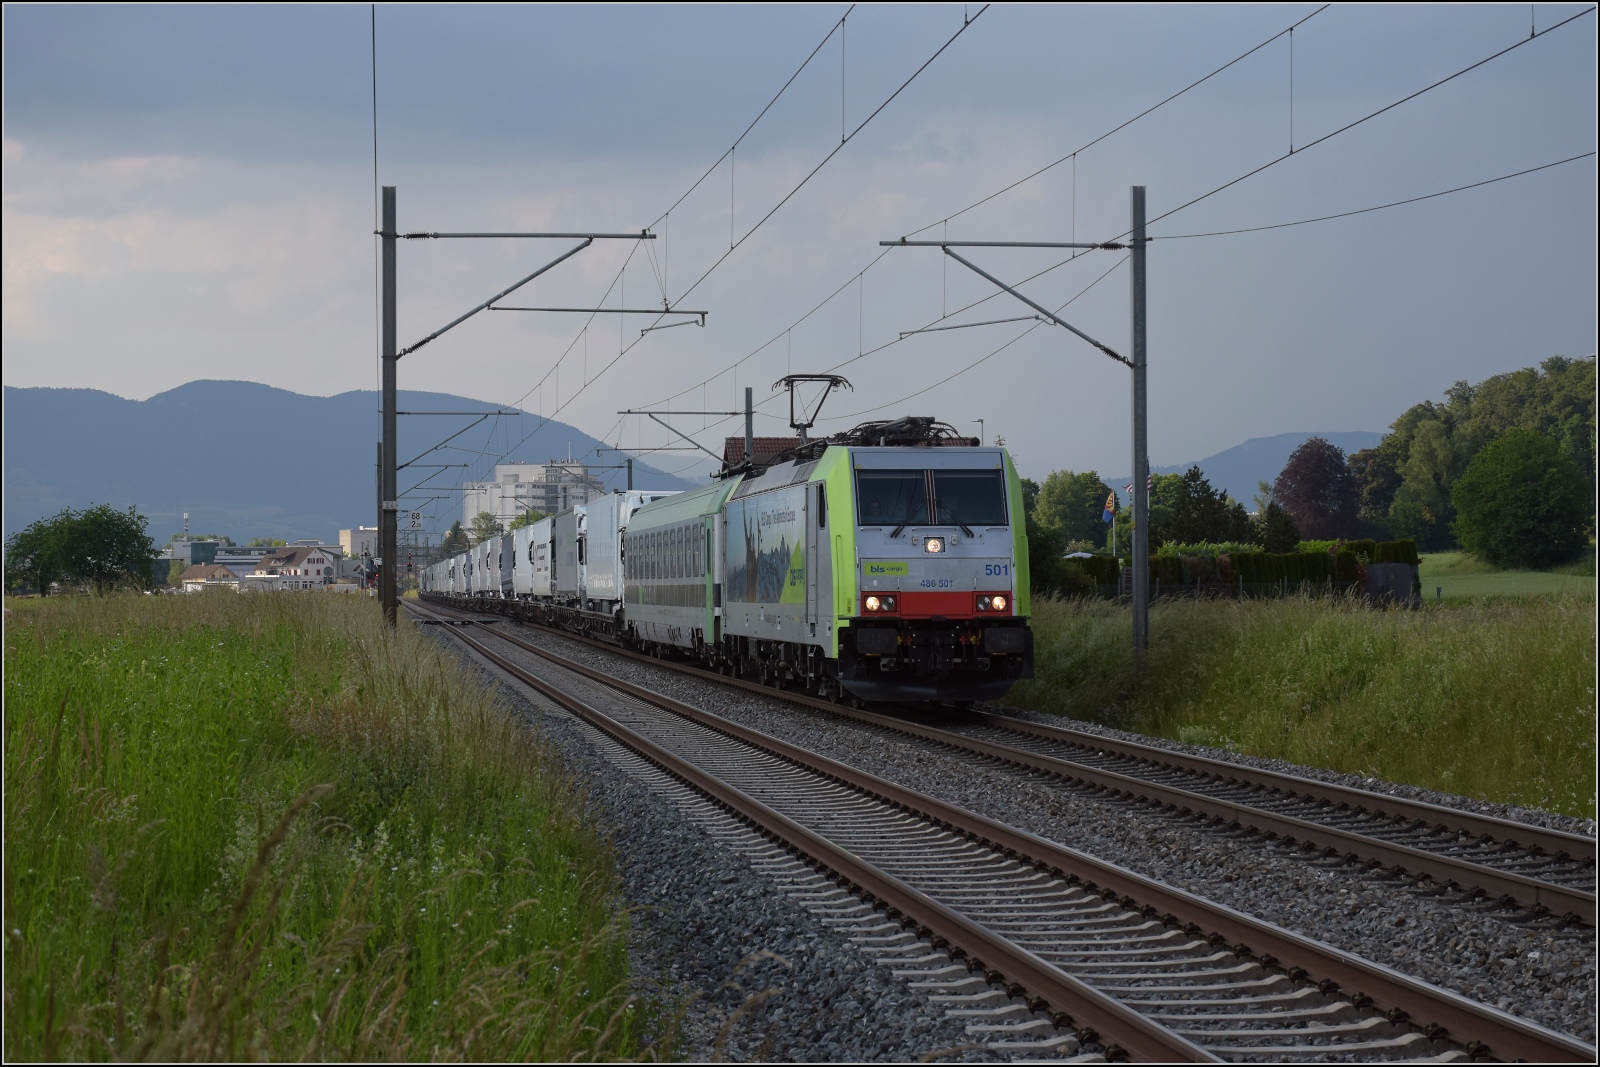 Fernverkehrstag auf der Altstrecke.

Via Burgdorf gibt es zumeist nur noch Güterverkehr, Nahverkehr und überregionale Züge nach Bern. Eine Rola tauchte noch auf mit Re 486 501. Bettenhausen, Juni 2023.